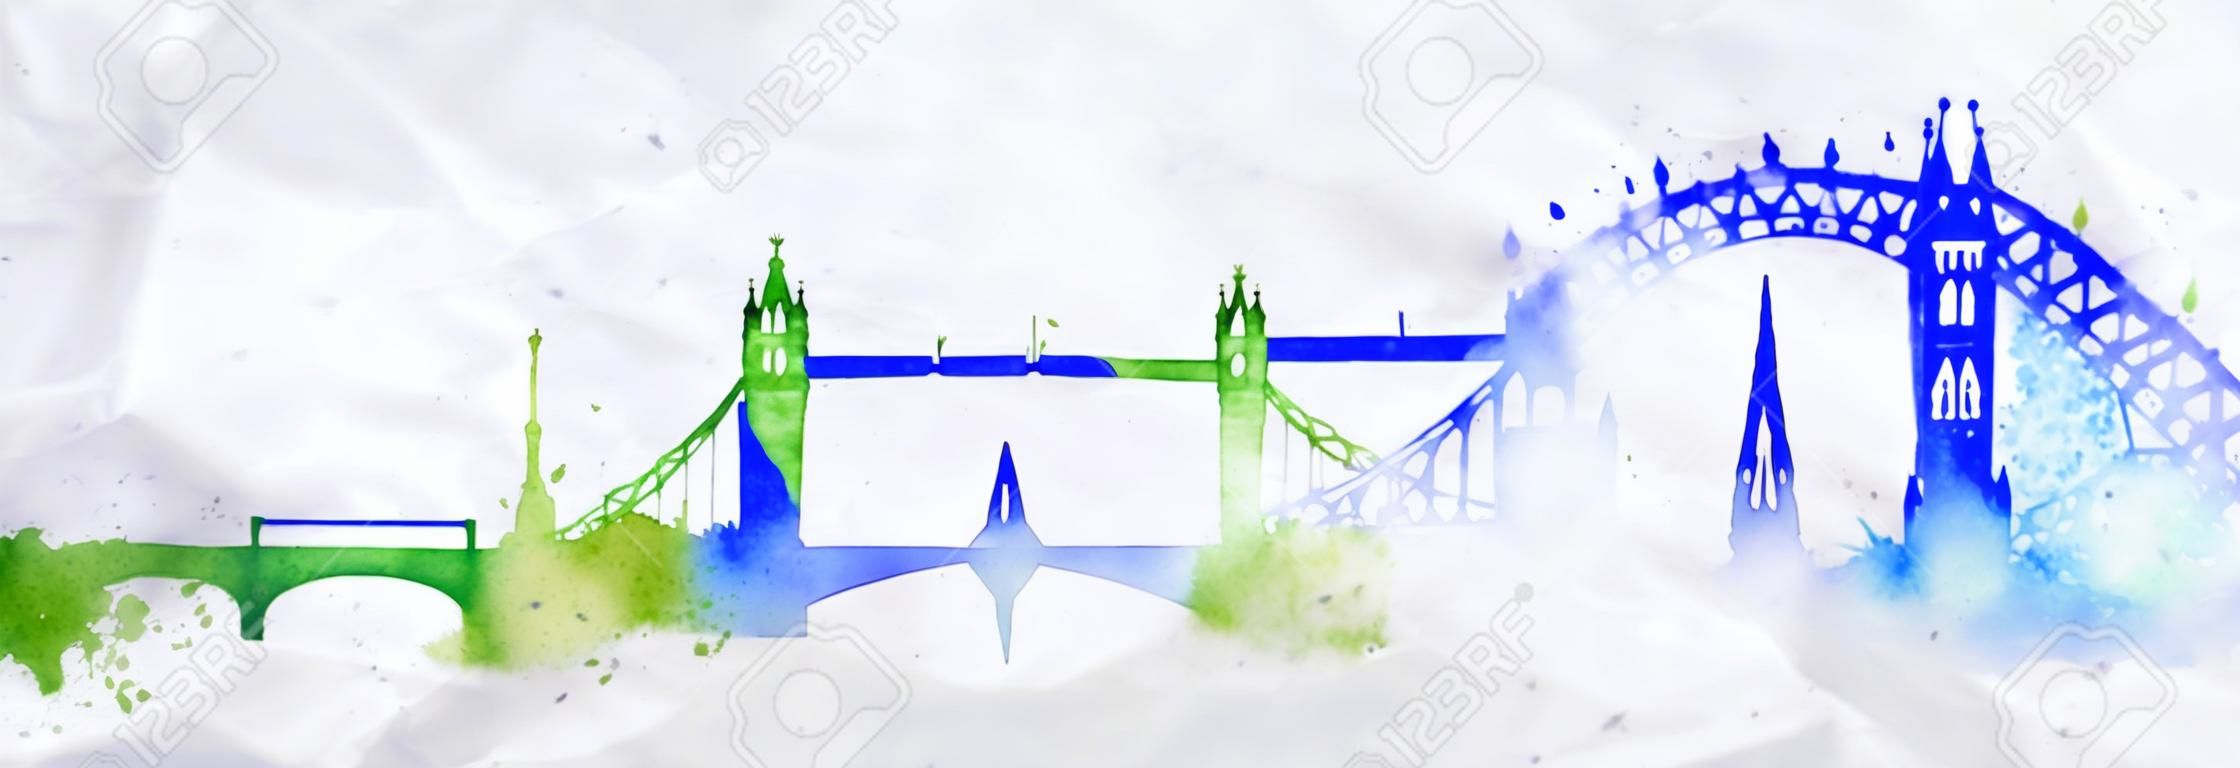 剪影伦敦市画与水彩水滴飞溅条纹与蓝绿色的标志性建筑